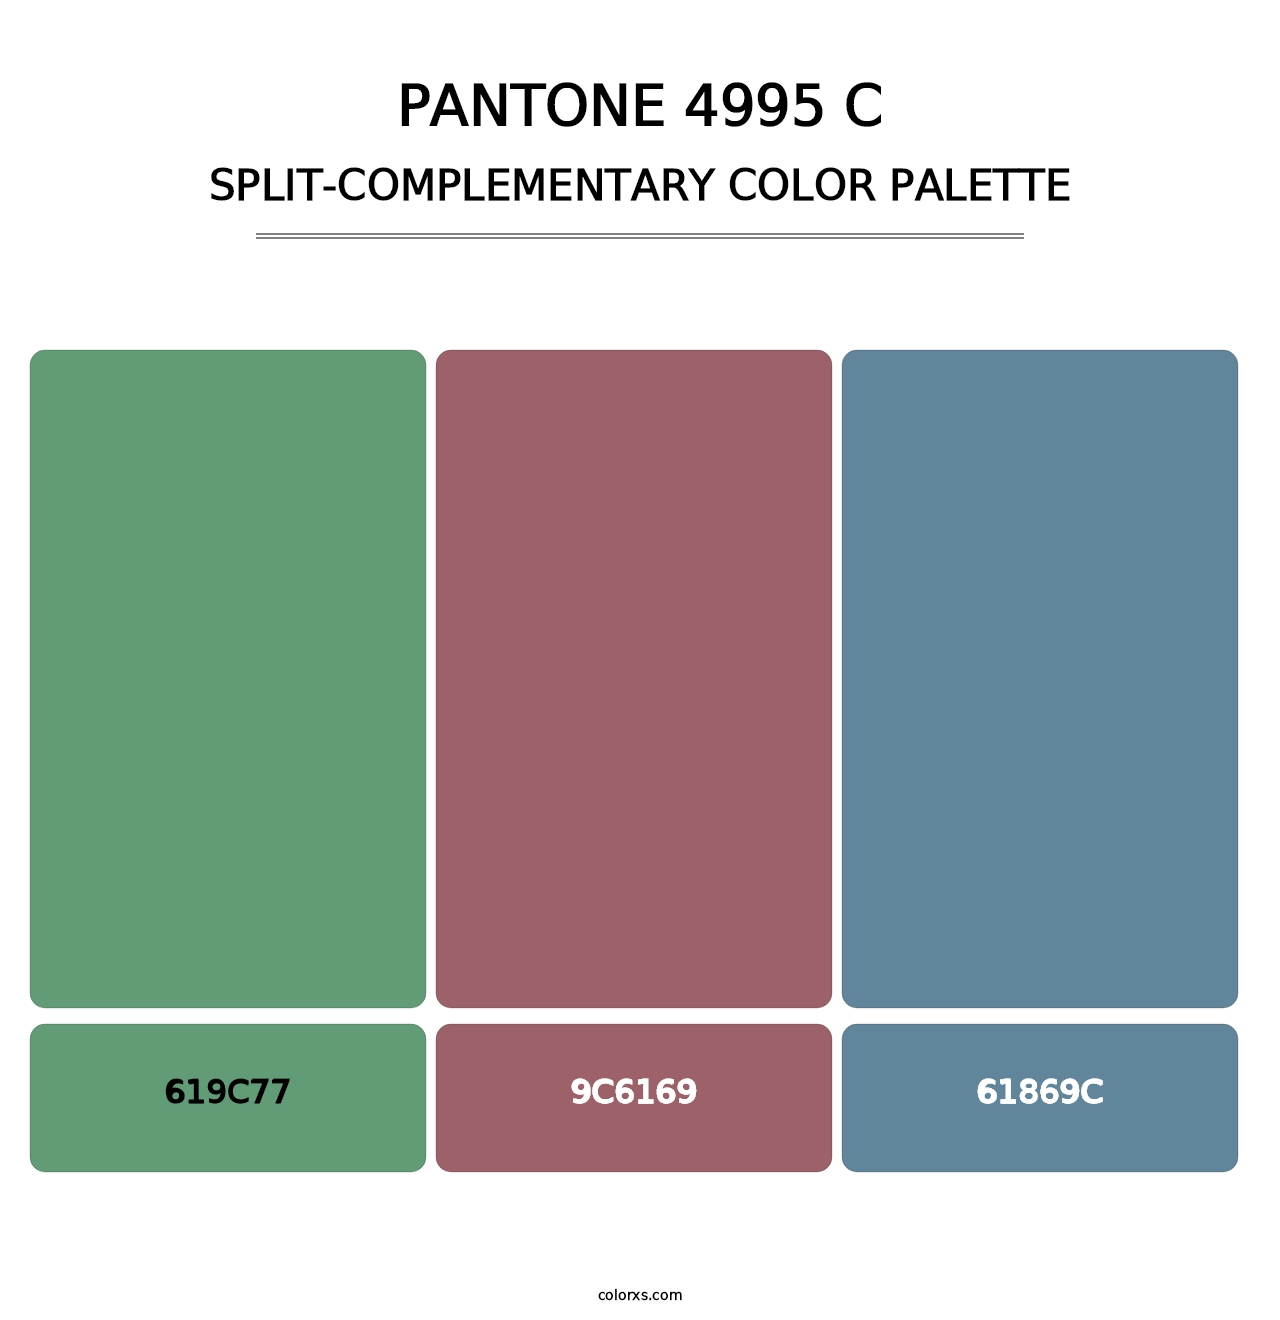 PANTONE 4995 C - Split-Complementary Color Palette